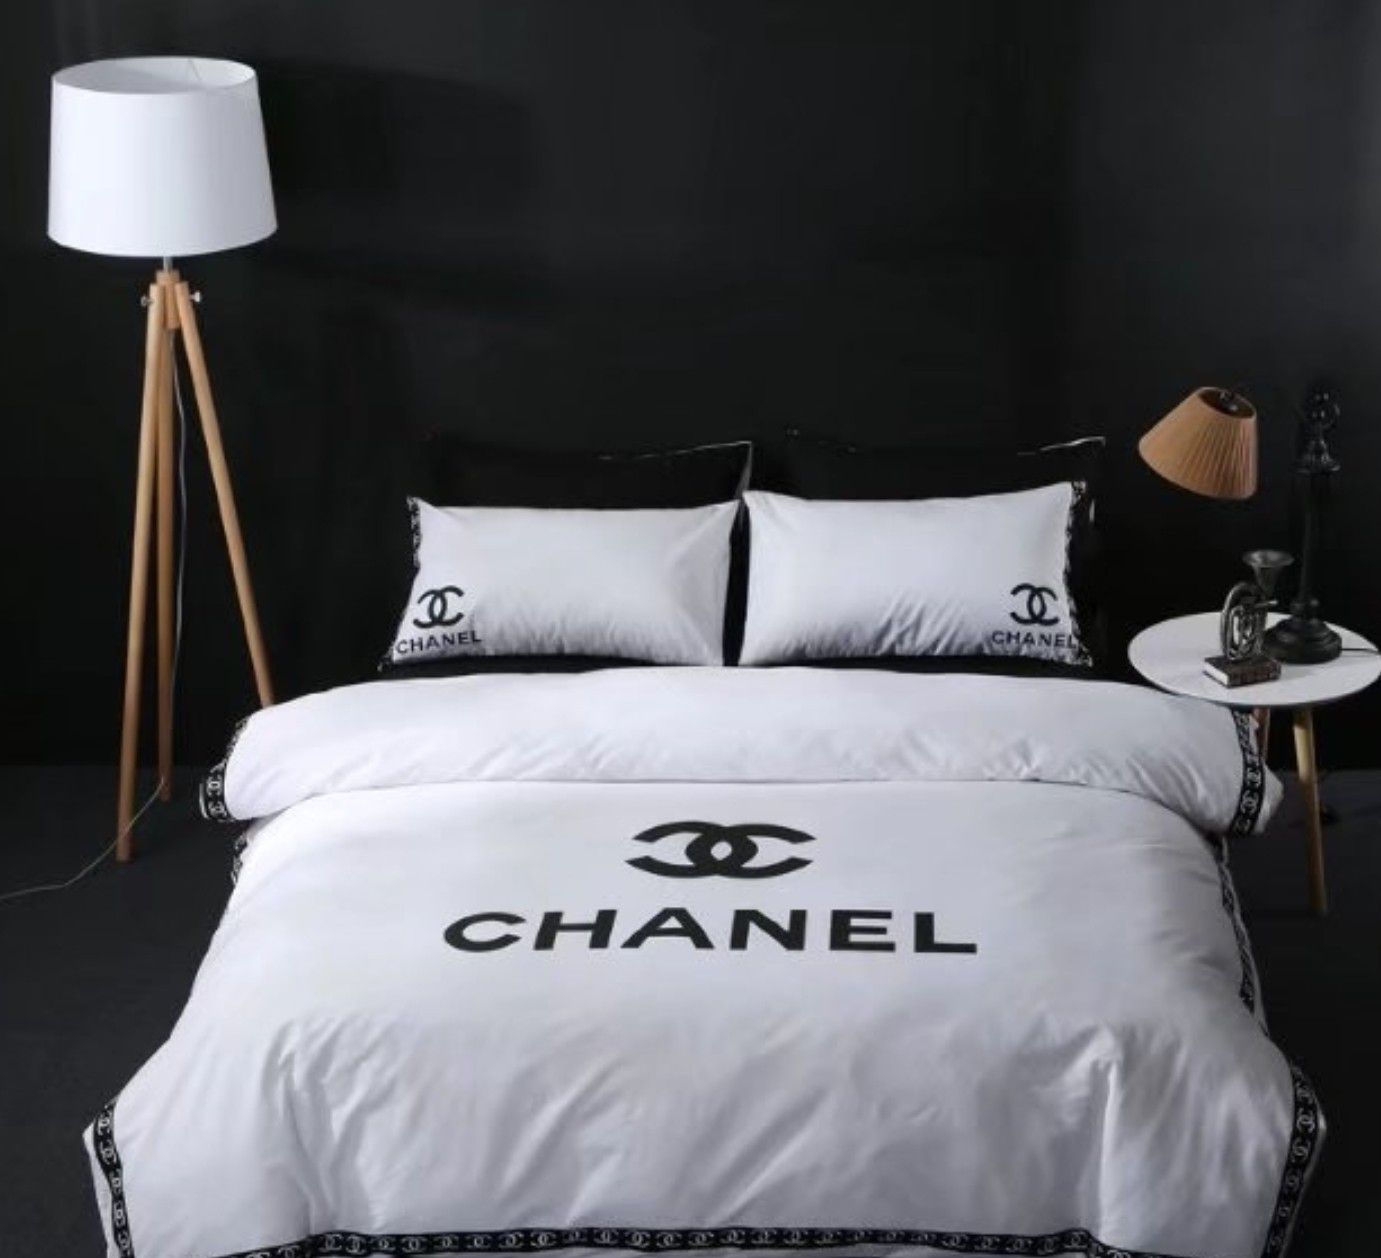 Chanel Comforter Set Black for Sale in Smyrna, GA - OfferUp